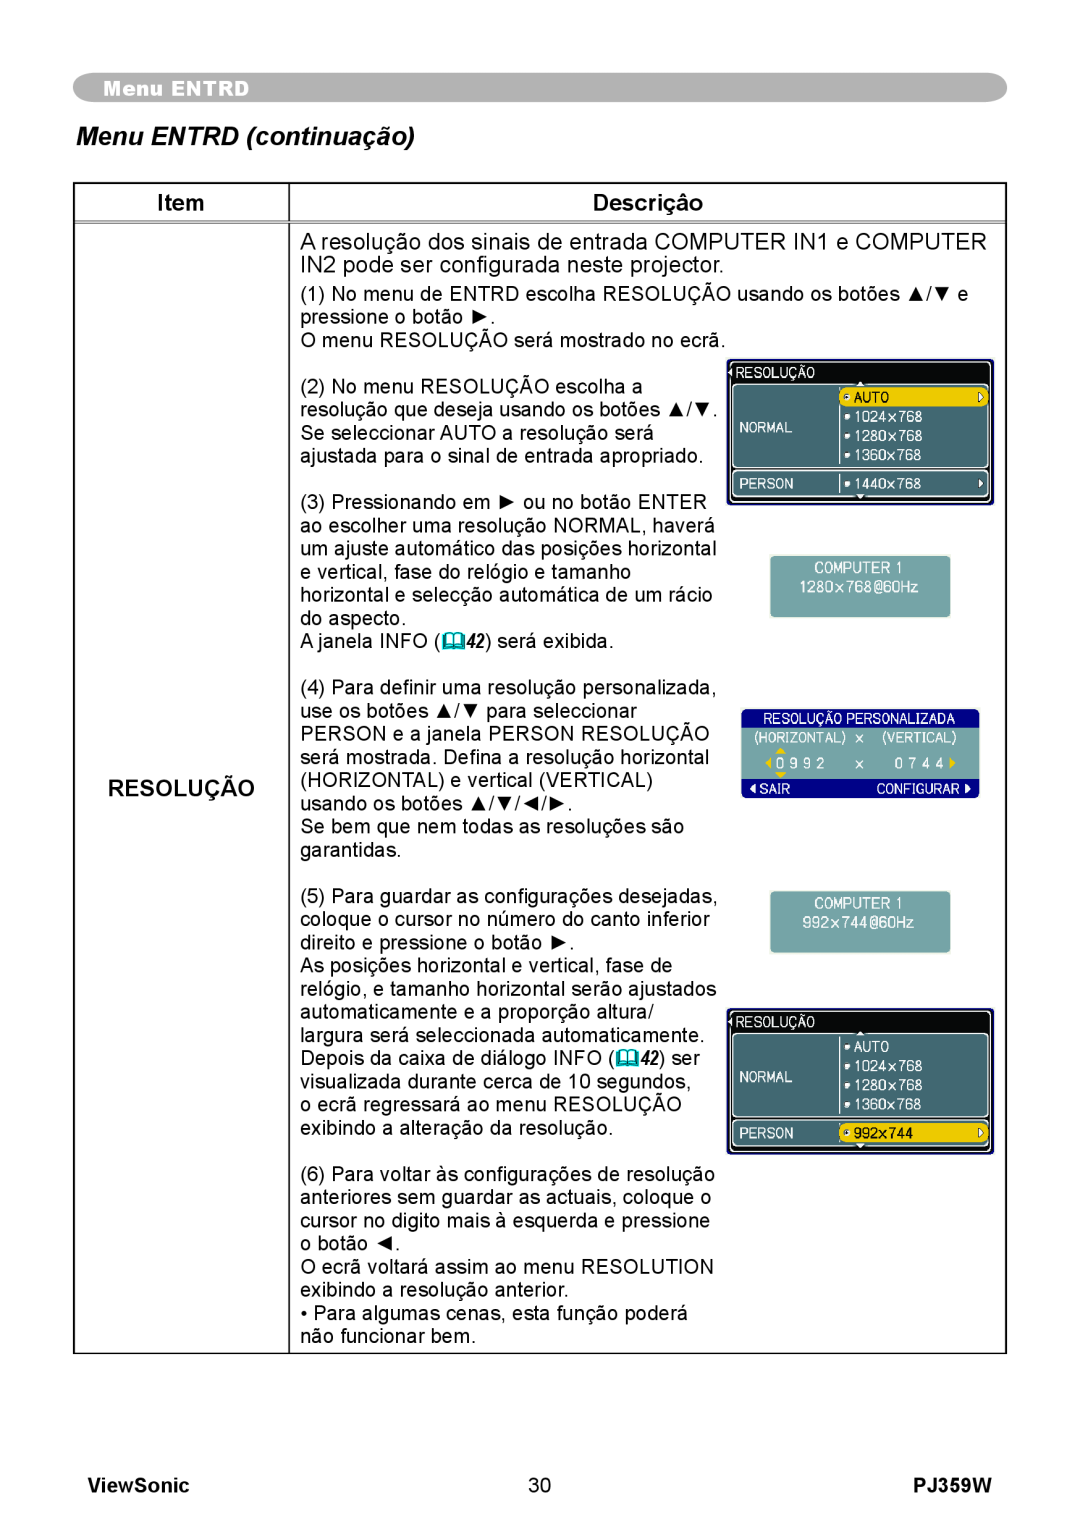 ViewSonic manual Menu ENTRD continuação, Descriçâo, Resolução, ViewSonic, PJ359W 